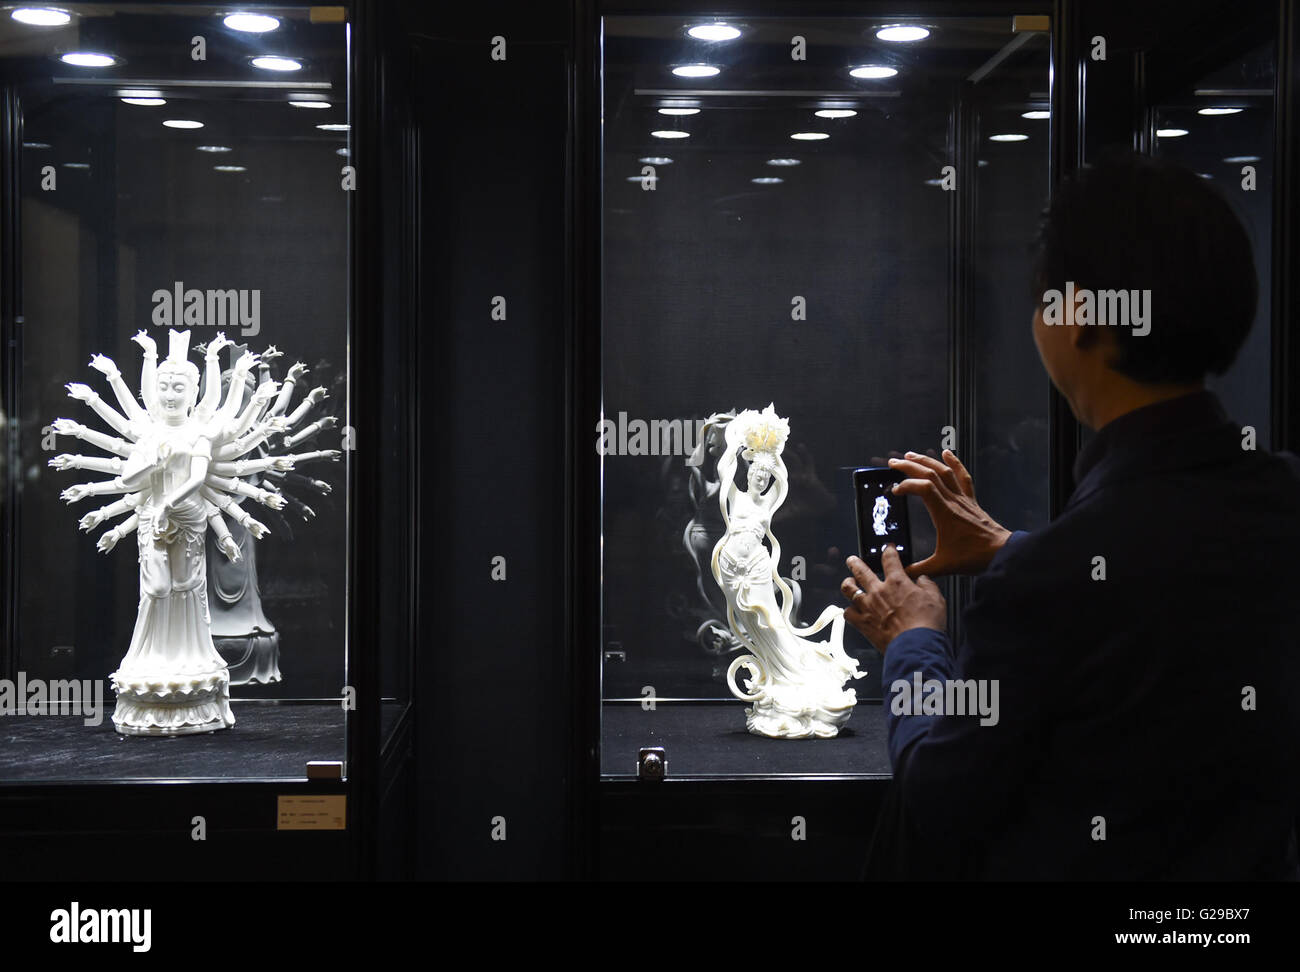 (160526) -- BEIJING, 26 mai 2016 (Xinhua) -- un visiteur prend des photos au cours d'une exposition d'art Porcelaine Dehua à Beijing, capitale de Chine, le 26 mai 2016. Dehua, connue comme l'une des bases de la chine porcelaine, bénéficie d'une longue histoire de la poterie. L'exposition est une activité de culture forum sino-françaises. (Xinhua/Luo Xiaoguang) (mcg) Banque D'Images